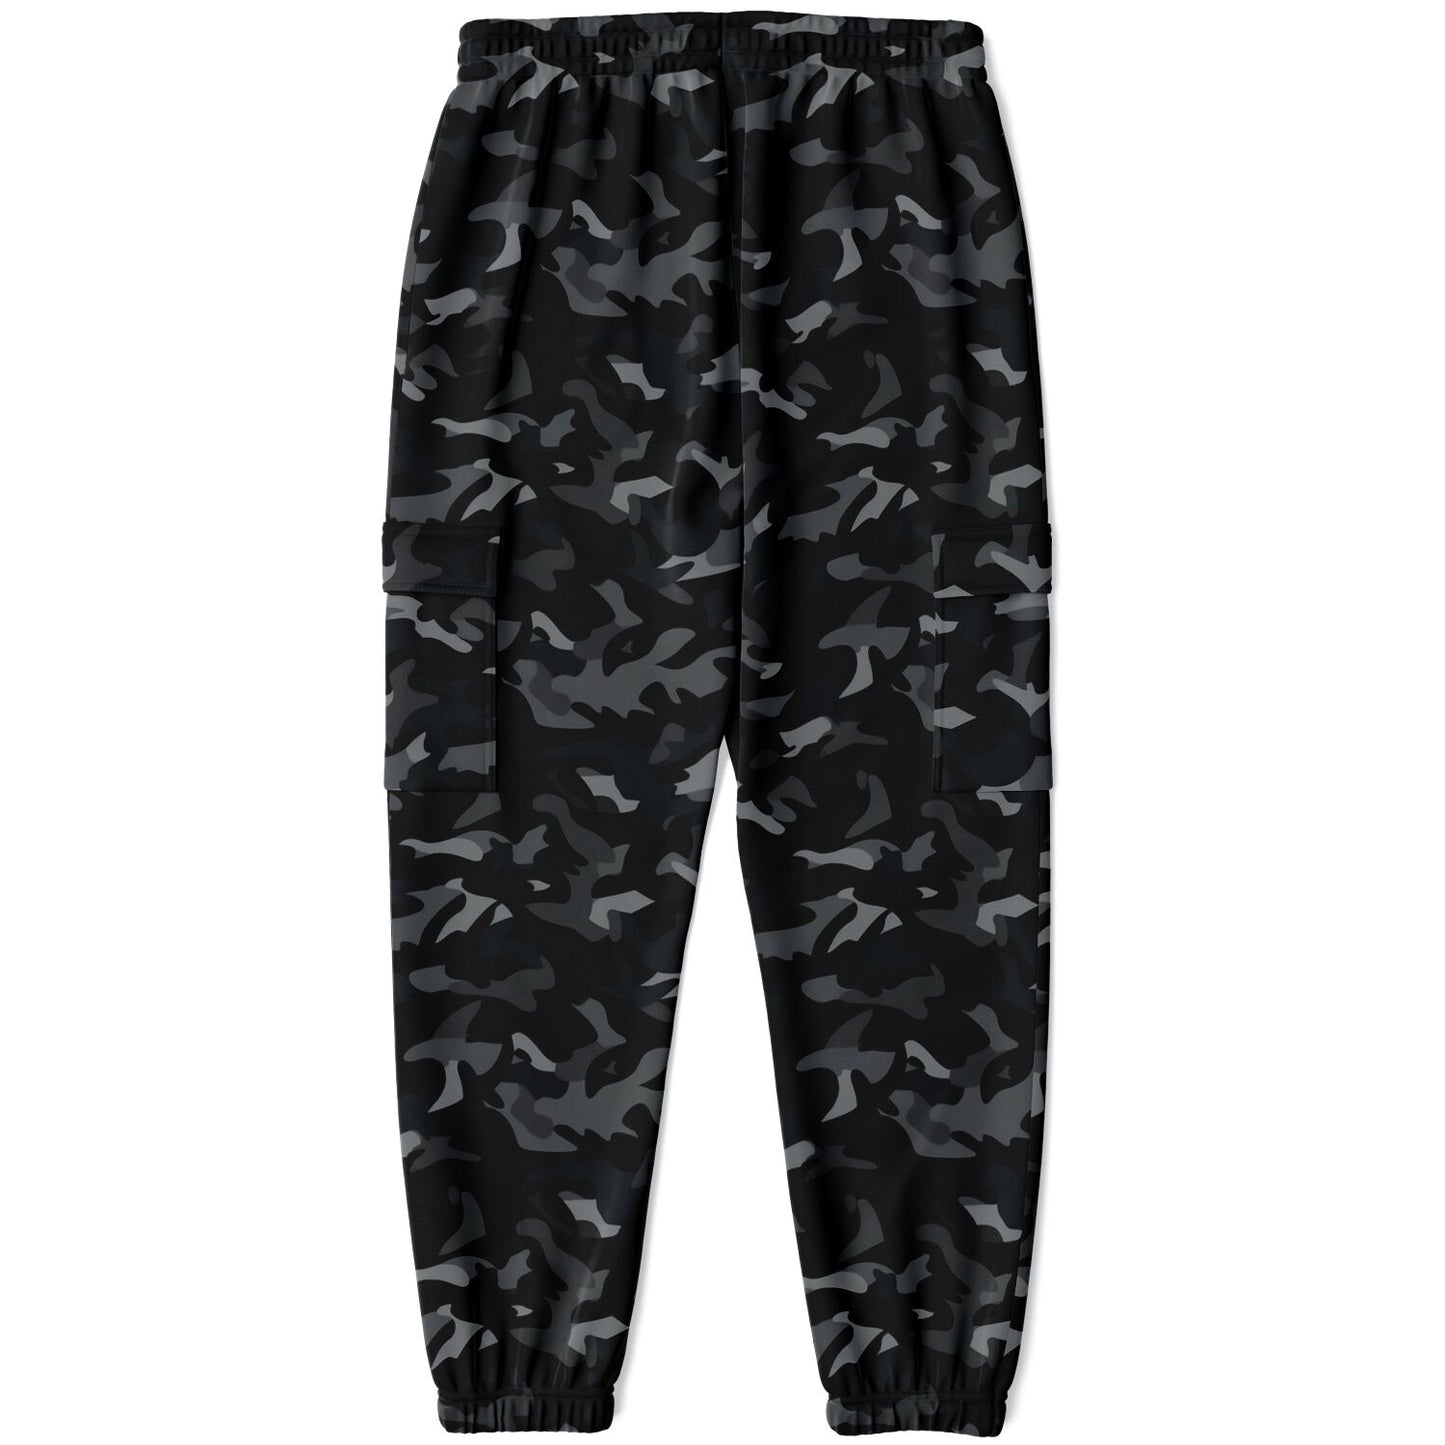 Black Camo Cargo Pants with Flap Pockets, Camouflage Men Women Fleece Joggers Sweatpants Cotton Sweats Streetwear Trousers